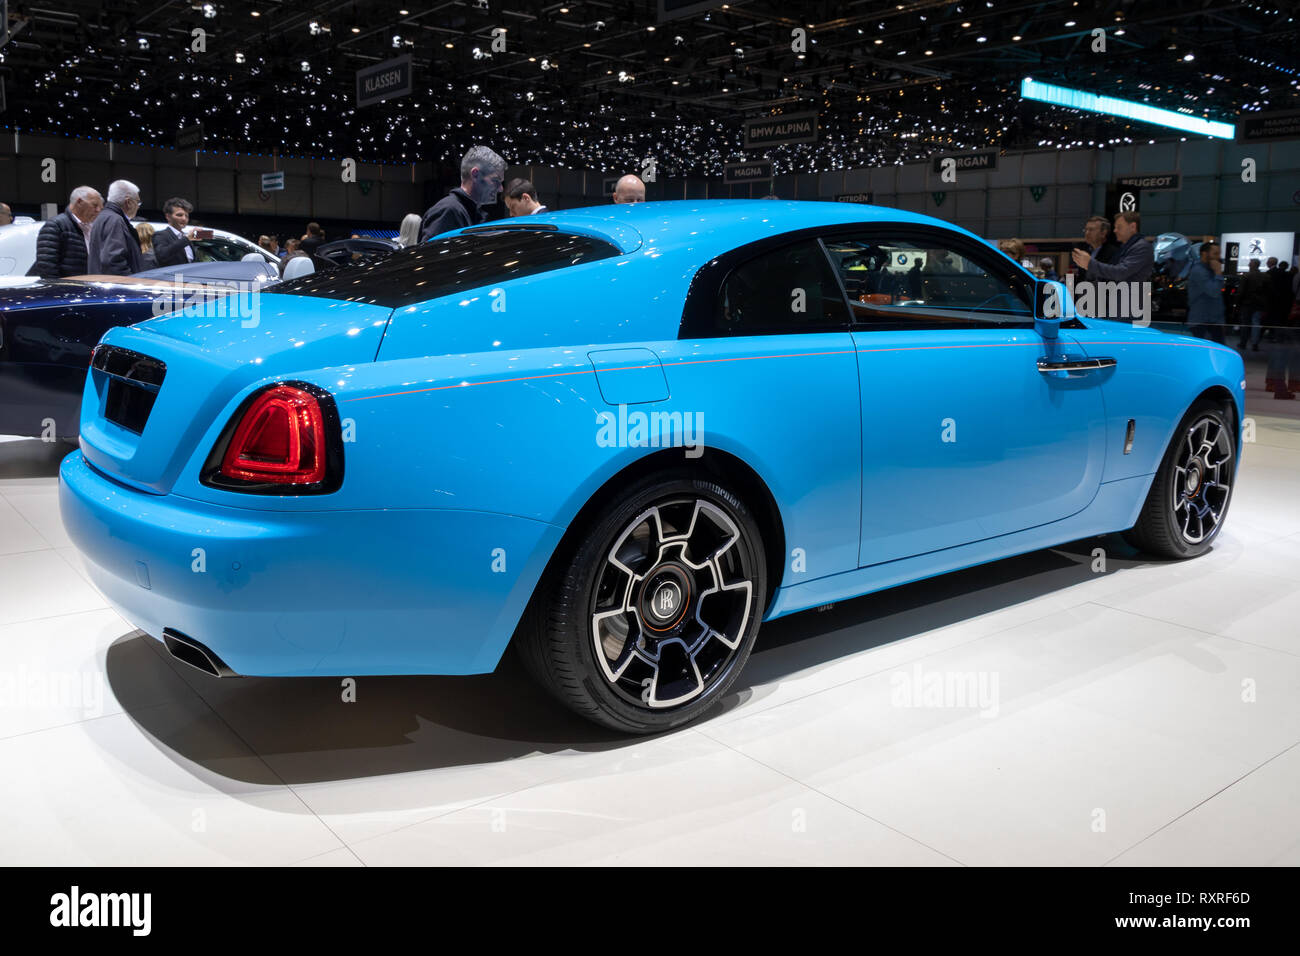 Genf, Schweiz - 6. MÄRZ 2019: Rolls-Royce Wraith Auto auf dem 89. Internationalen Automobilsalon in Genf präsentiert. Stockfoto